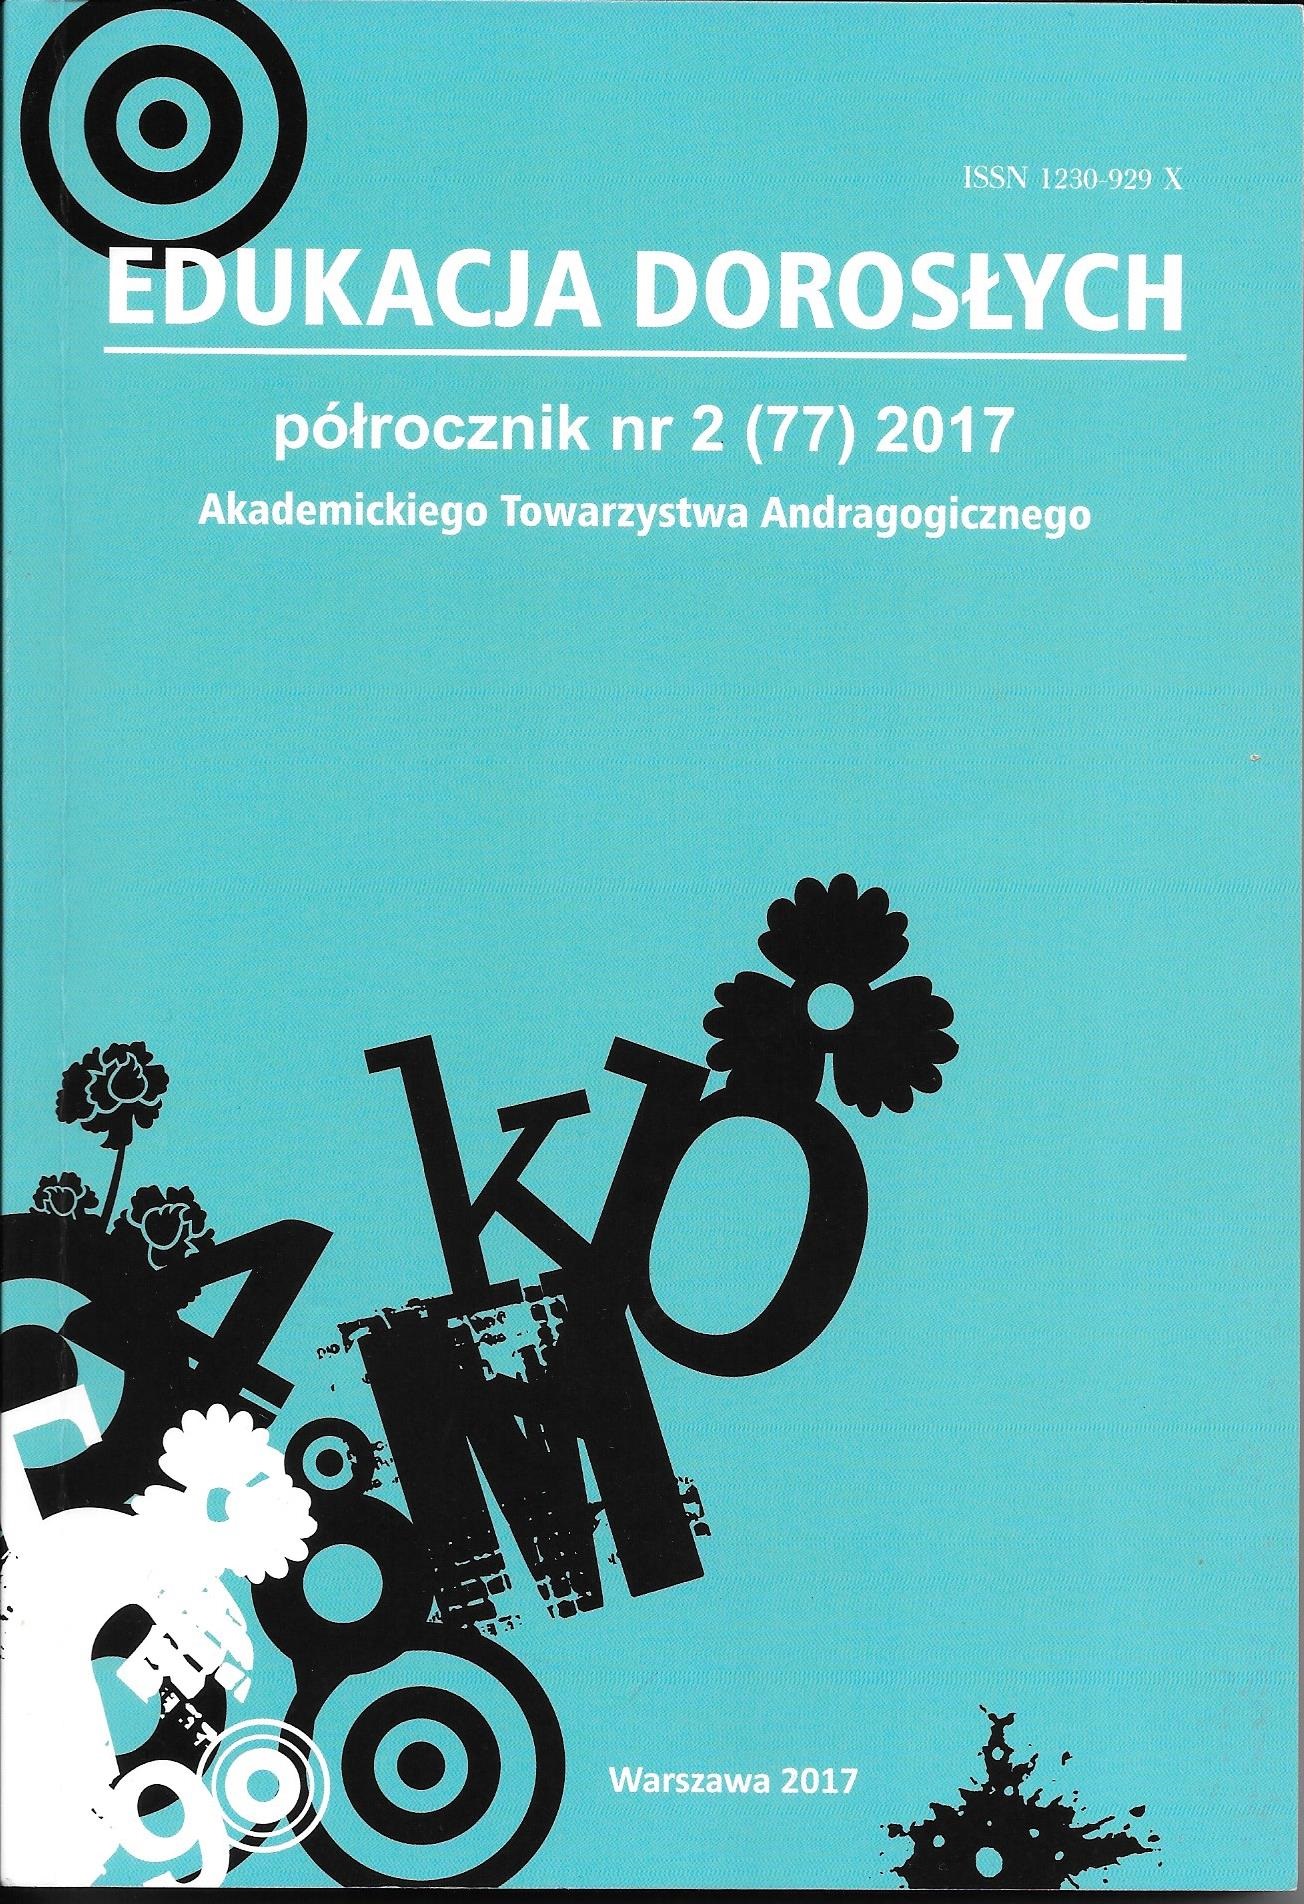 Sprawozdanie z III Ogólnopolskiego Zjazdu Andragogicznego: Dorośli w edukacji. Nowe konteksty, odmienne perspektywy, innowacyjne rozwiązania (Warszawa , 12-12 czerwca2017 roku)